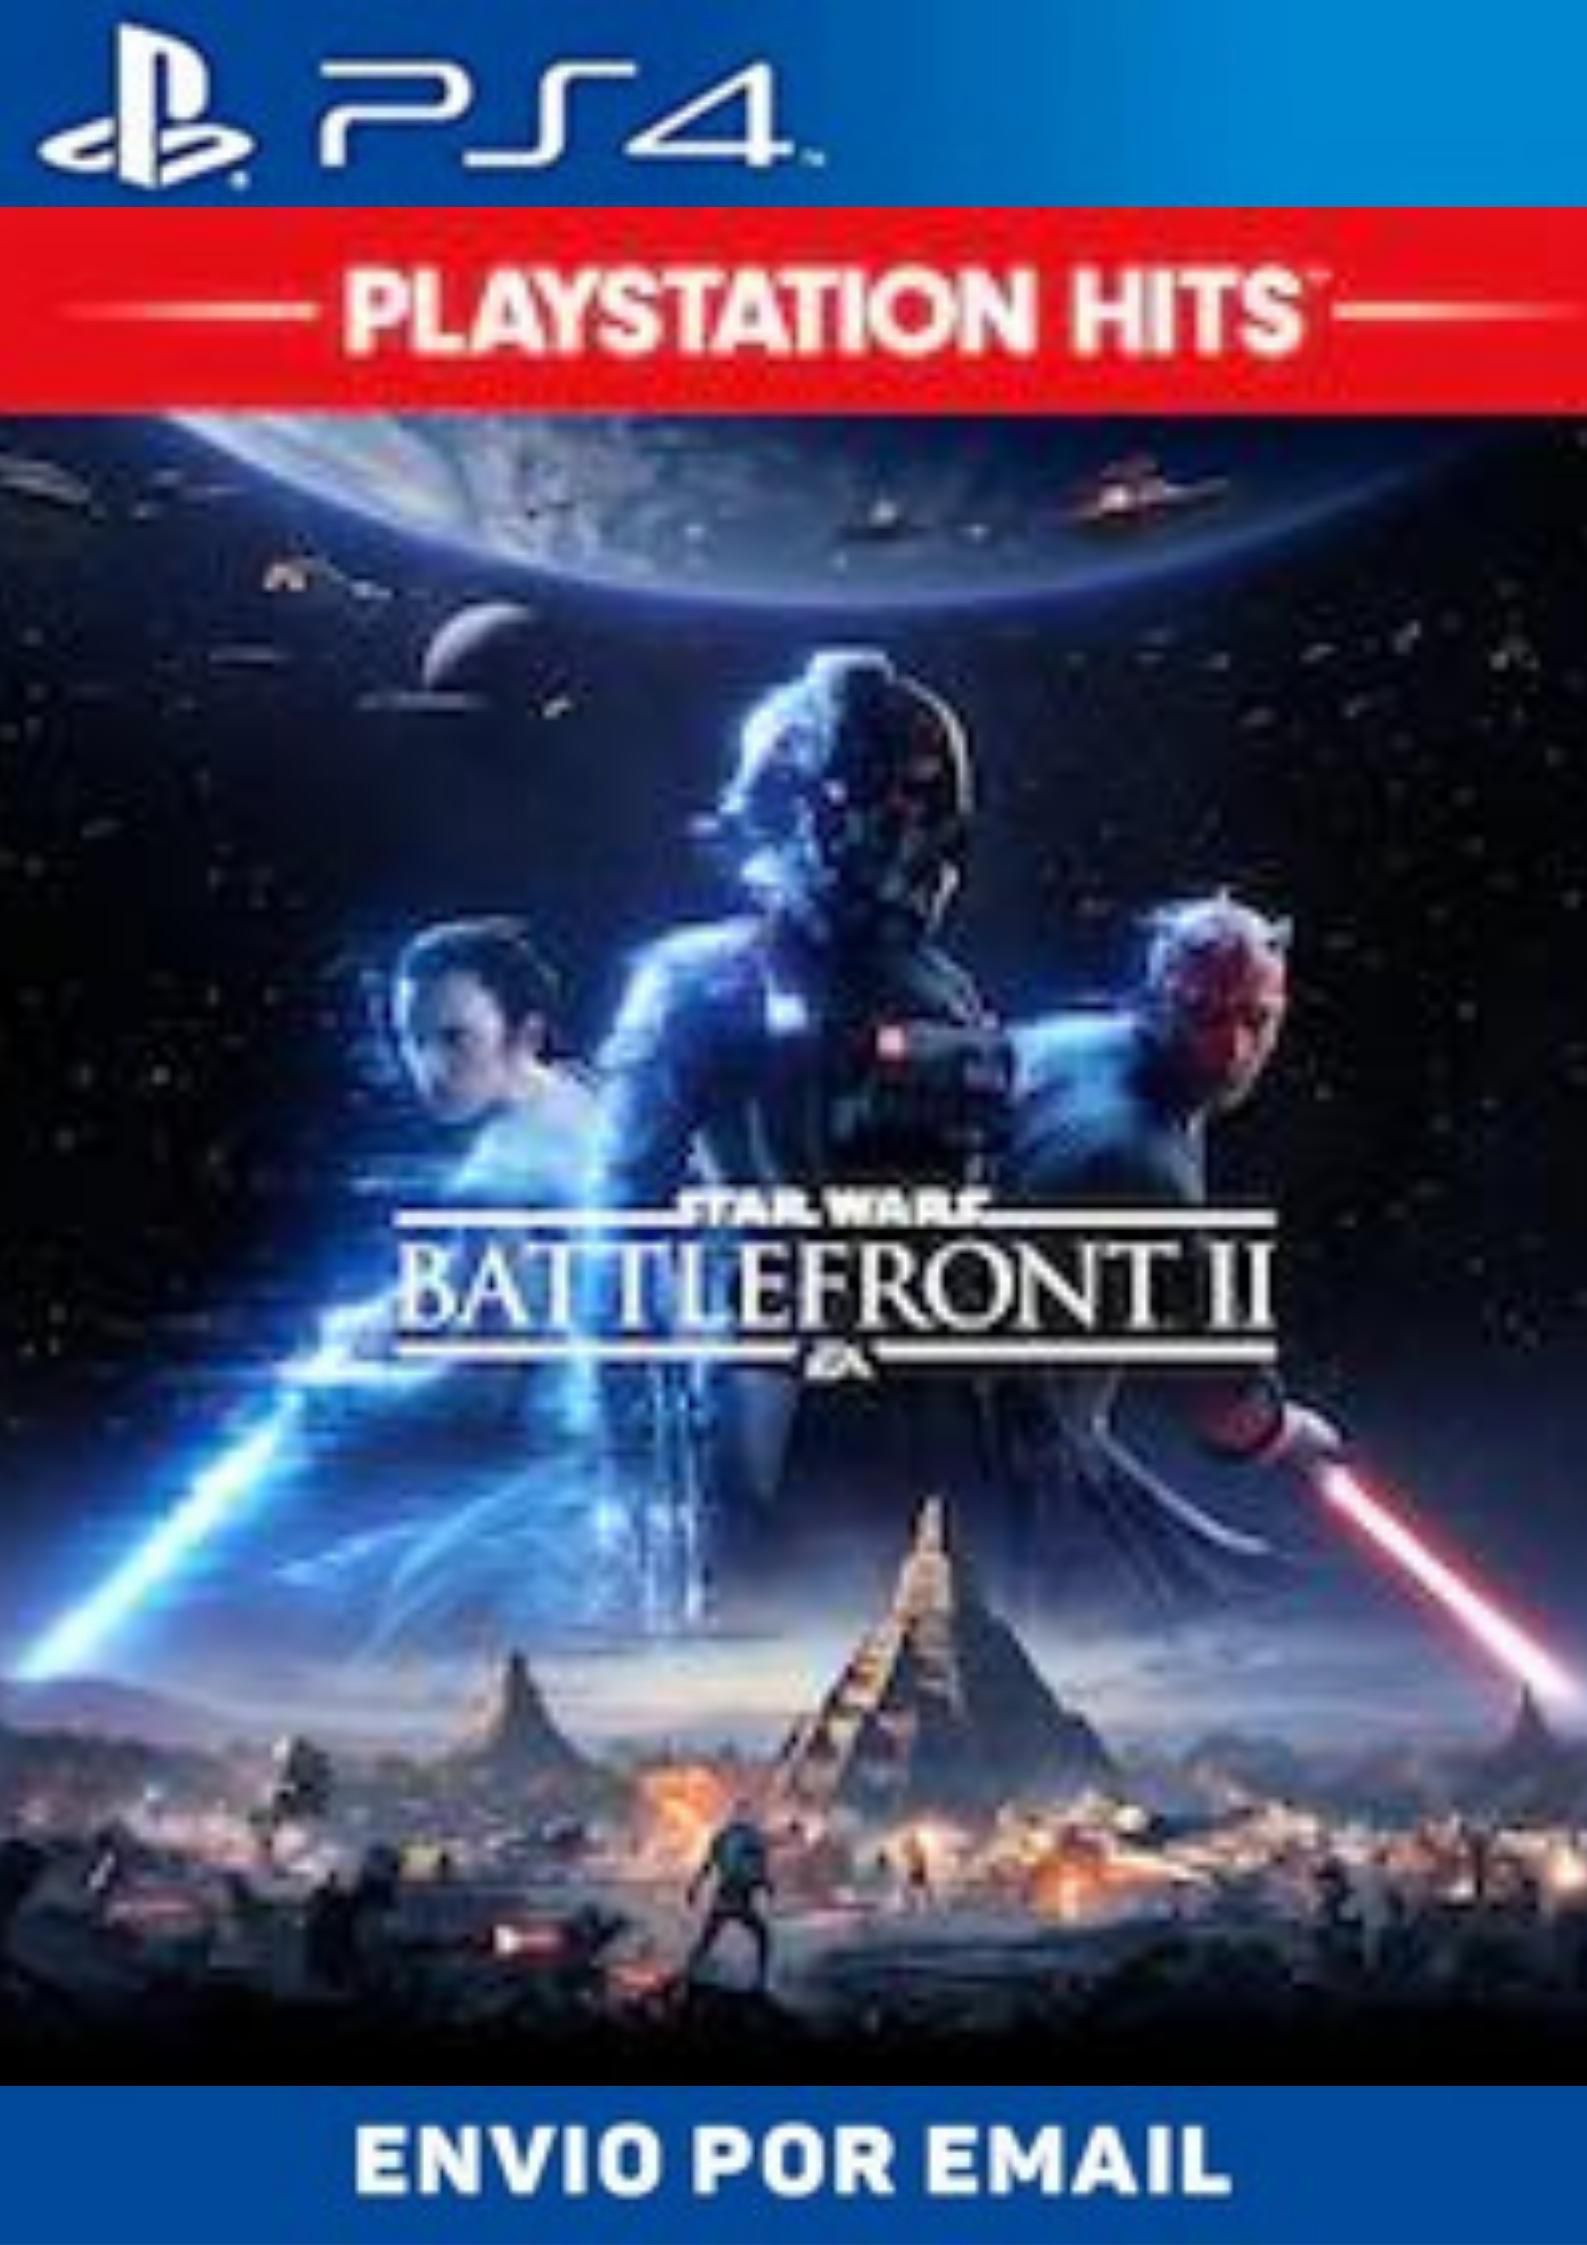 Star Wars Battlefront 2 - Ps4 Mídia Fìsica Usado - Mundo Joy Games - Venda,  Compra e Assistência em Games e Informática